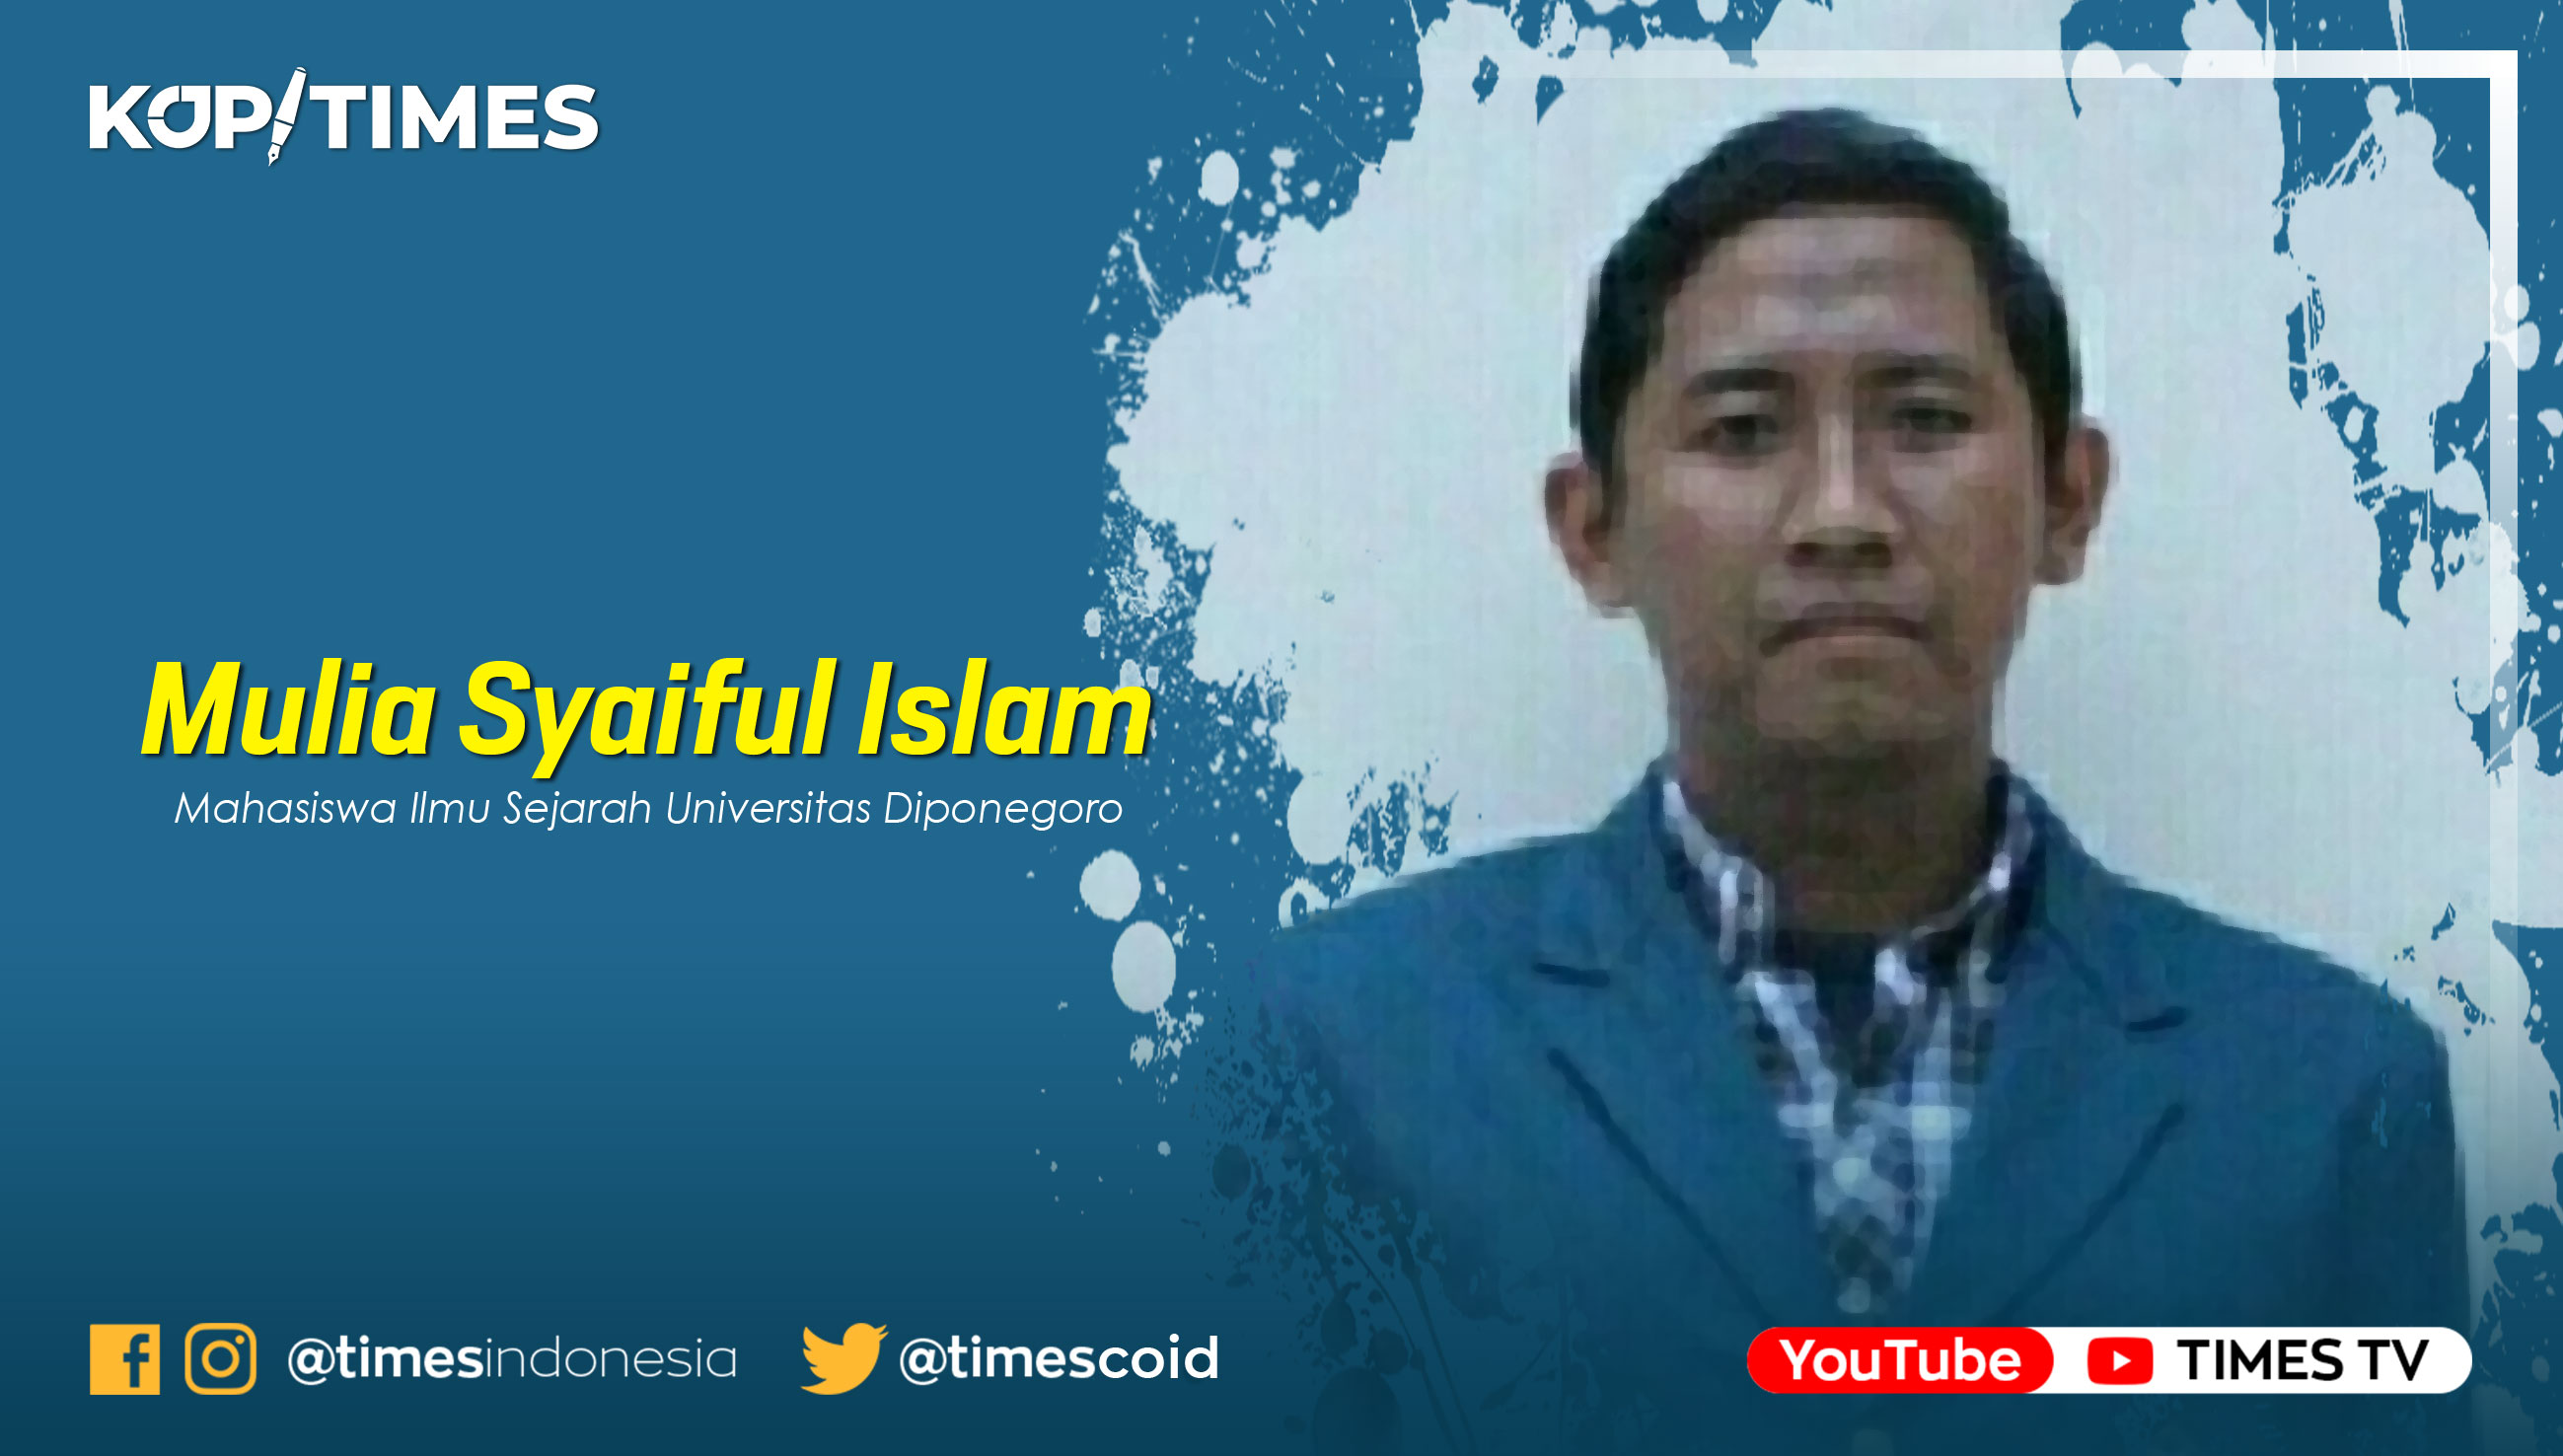 Mulia Syaiful Islam, Mahasiswa Ilmu Sejarah Universitas Diponegoro.